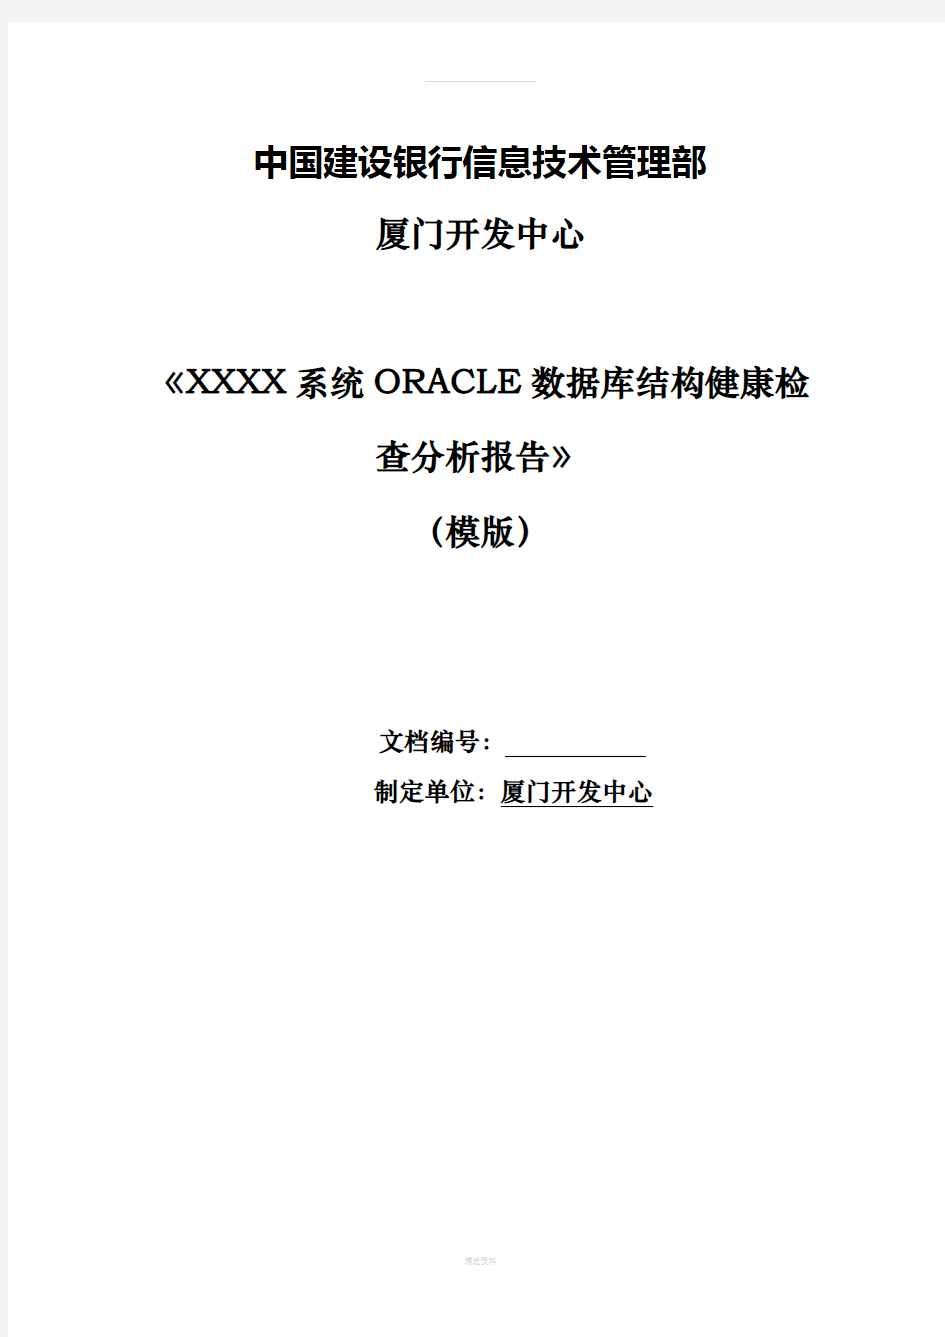 ORACLE数据库结构健康检查分析报告(模版)